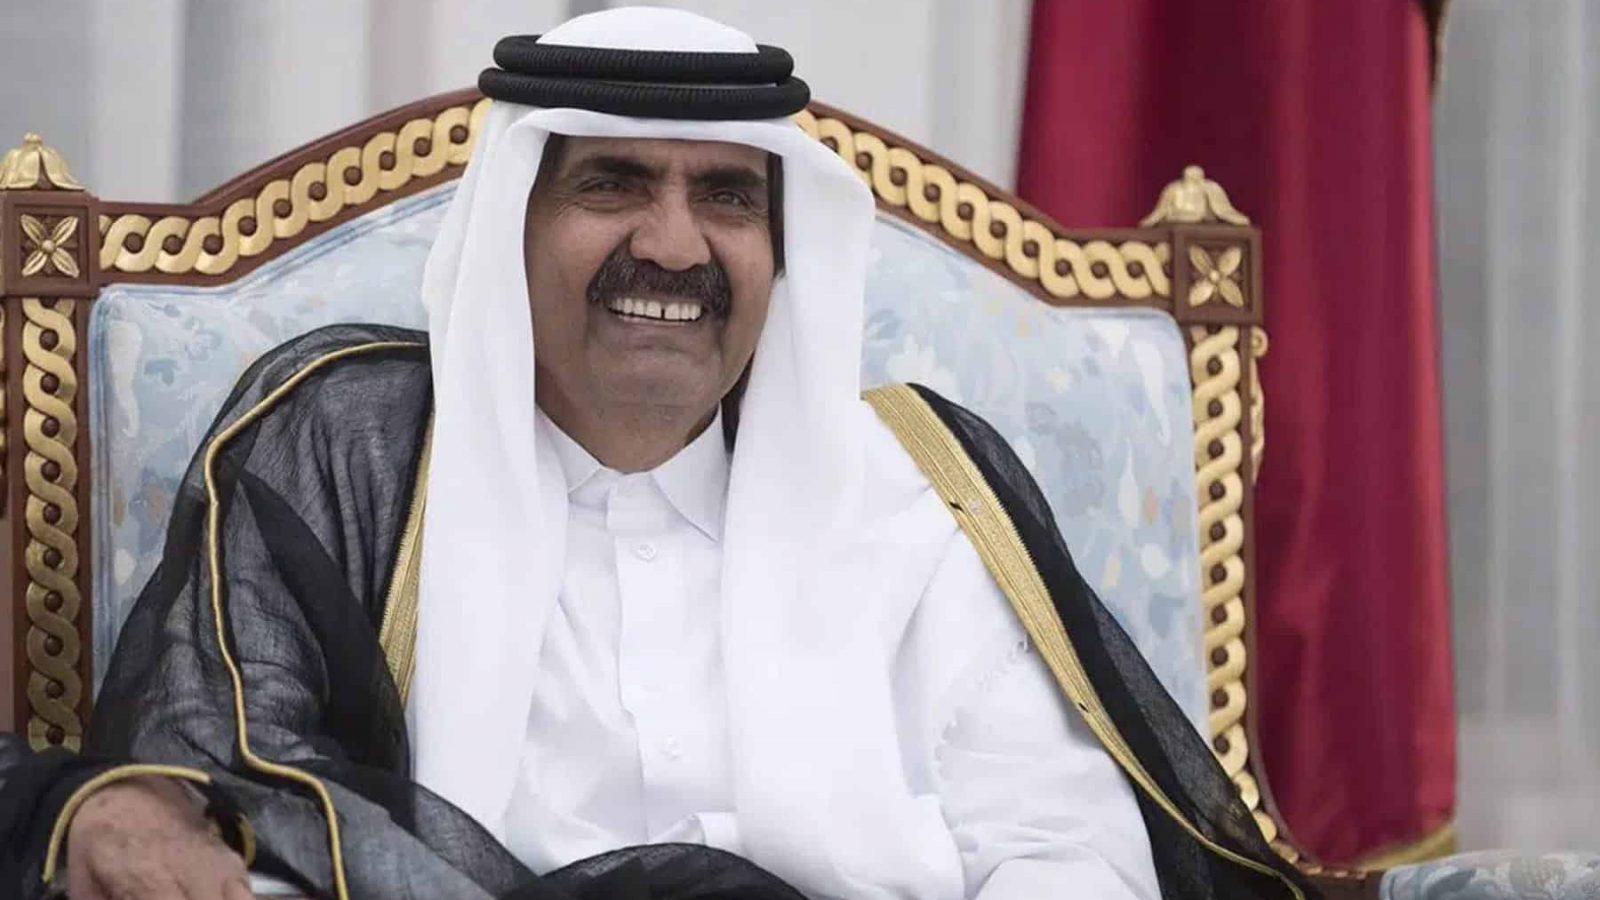 صورة لأمير قطر السابق تثير زوبعة في وسائل التواصل الاجتماعي